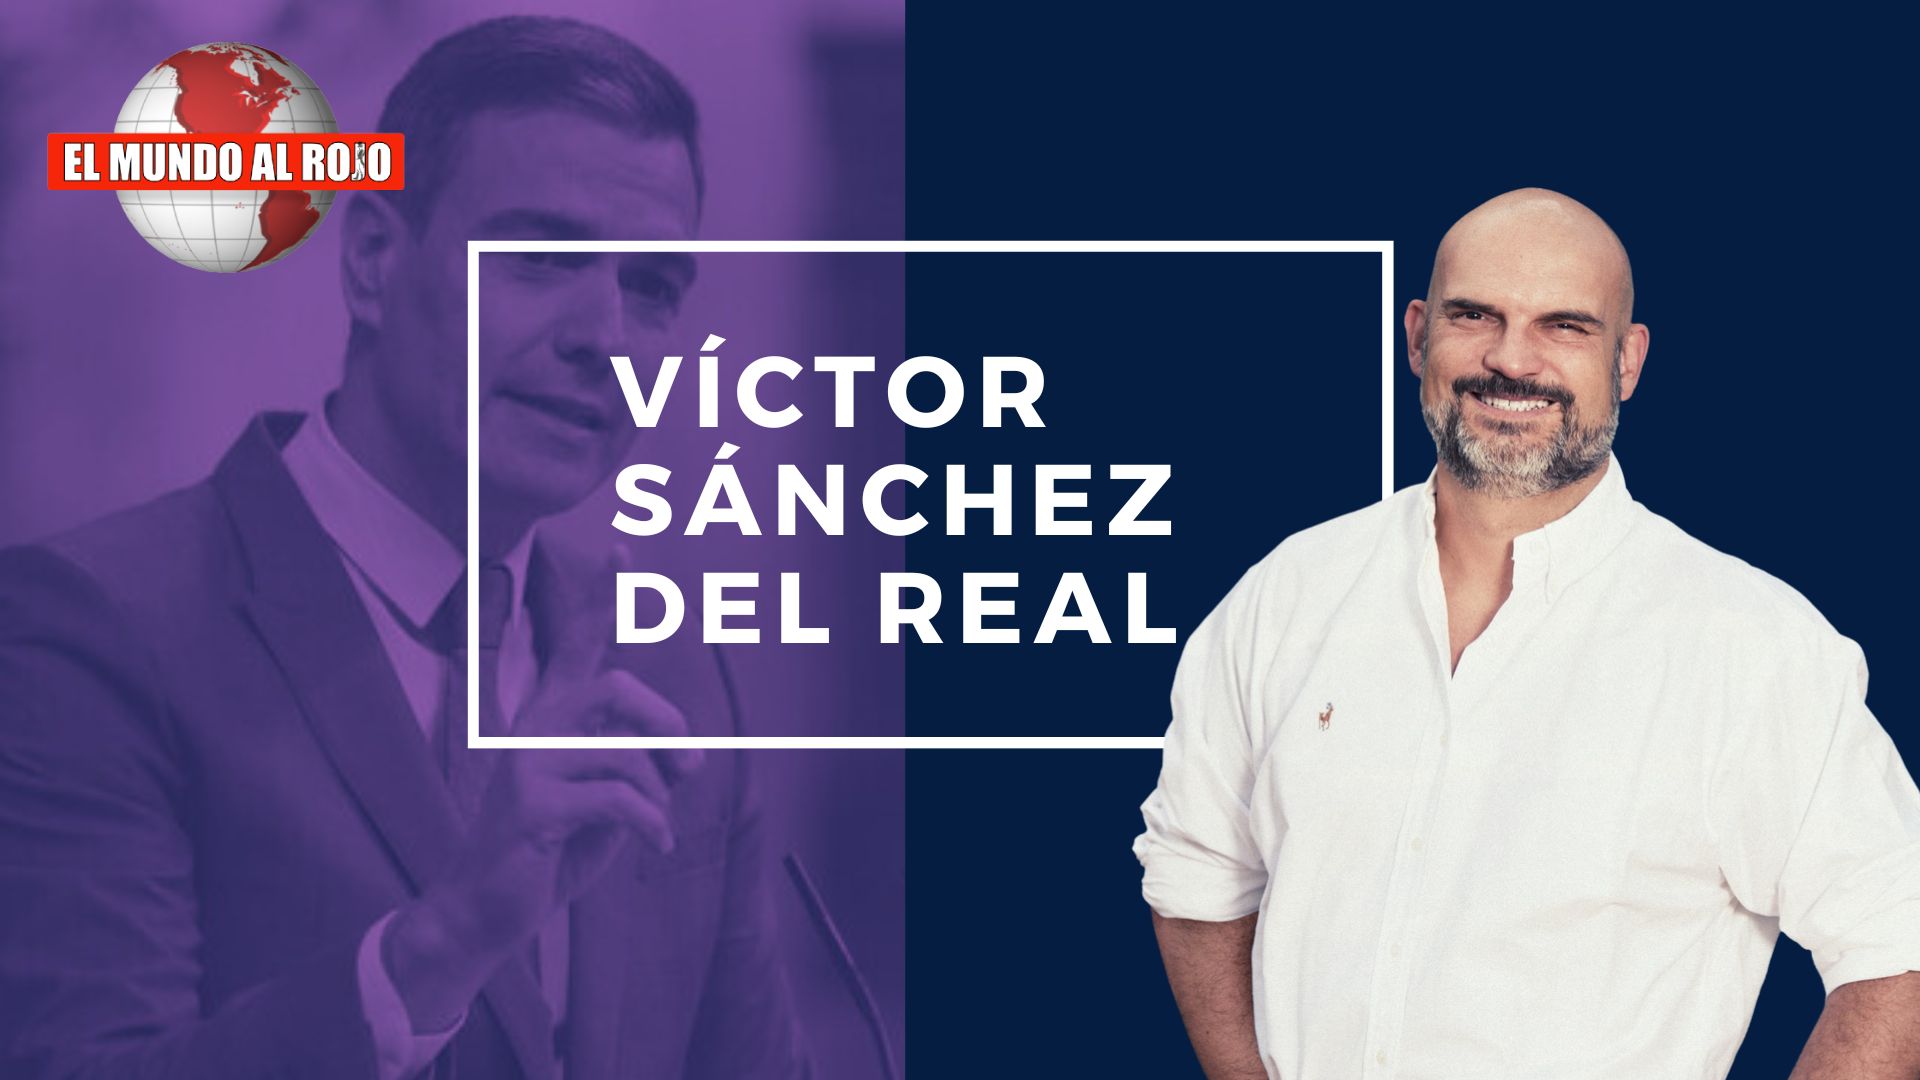 Víctor Sánchez del Real